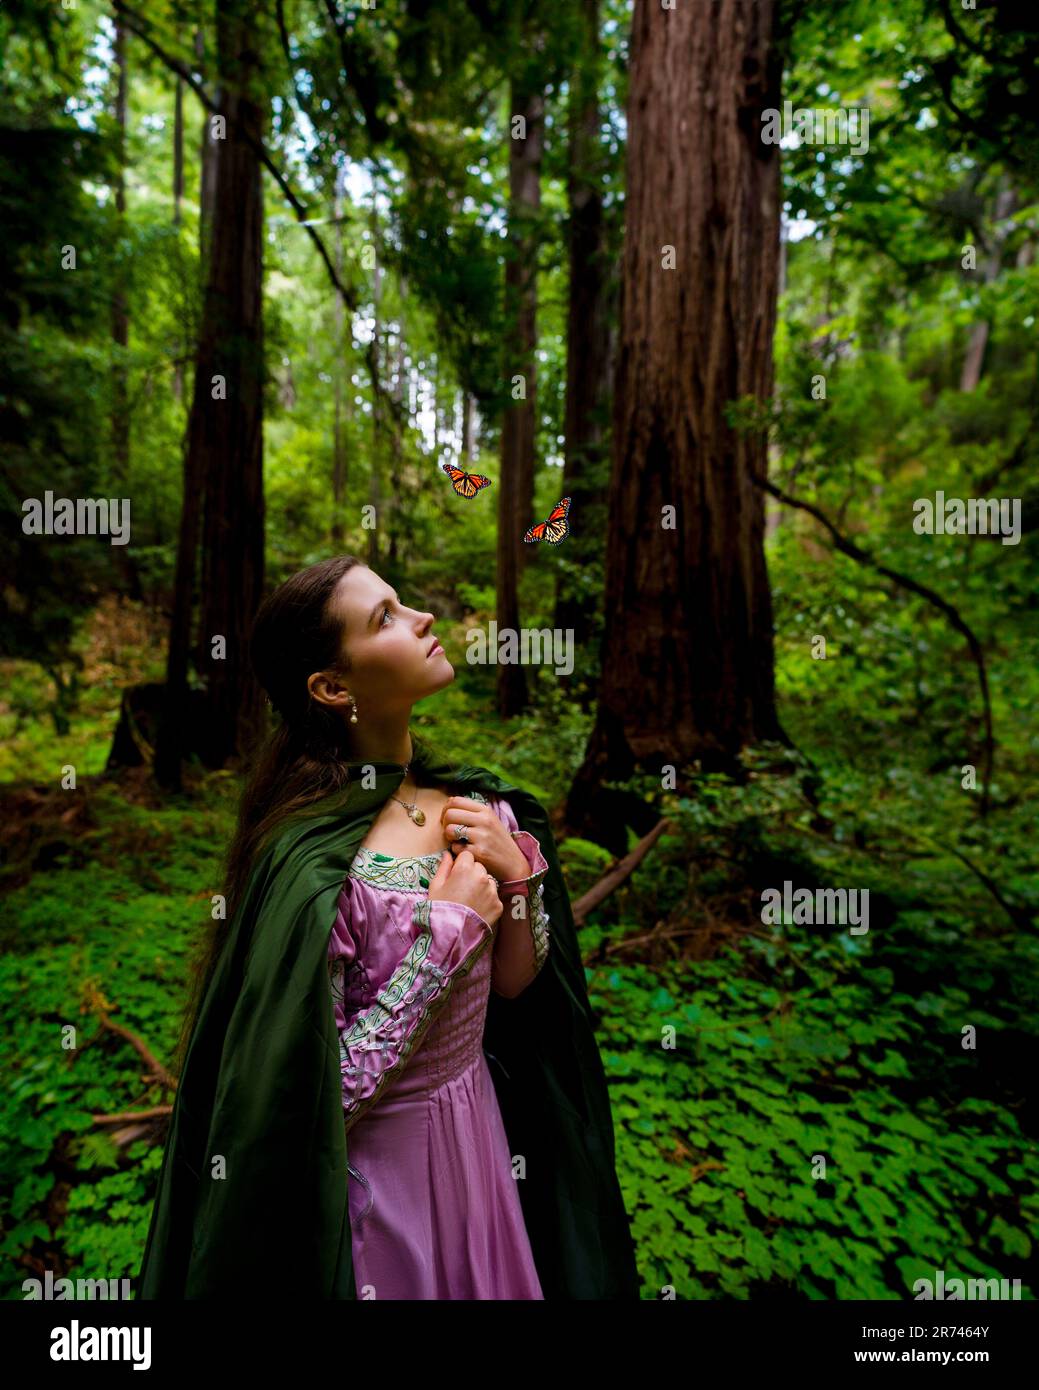 Märchenhafte Prinzessin in grünem Umhang und rosafarbenem Kleid mit Blick auf Schmetterlinge im Wald | Grün-Braun- und Pink-Farbtöne Stockfoto